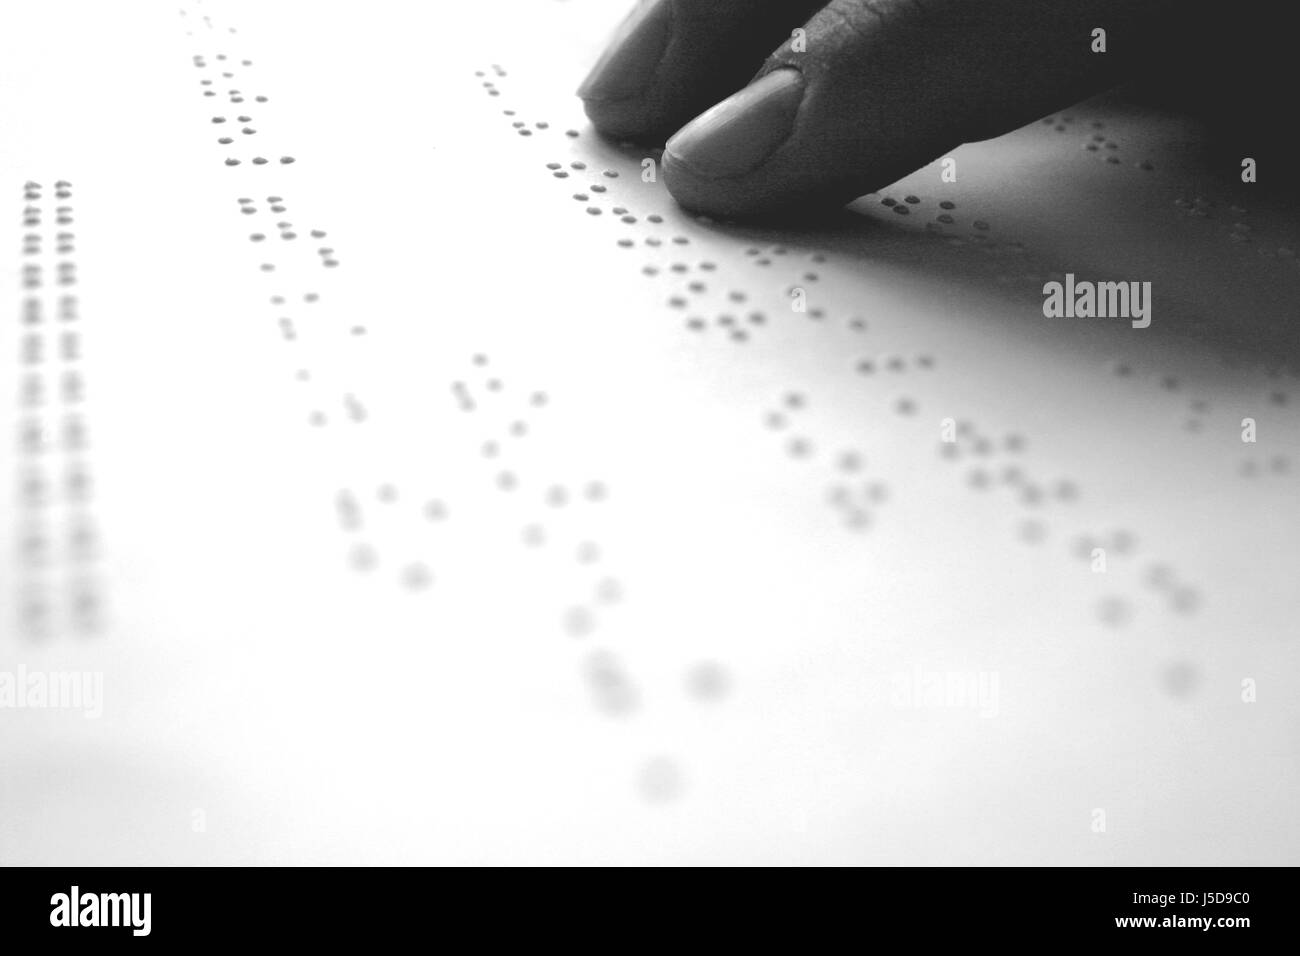 Doigt main mains sentent bon sens du toucher en braille aveugle lit les voies de numérisation Banque D'Images